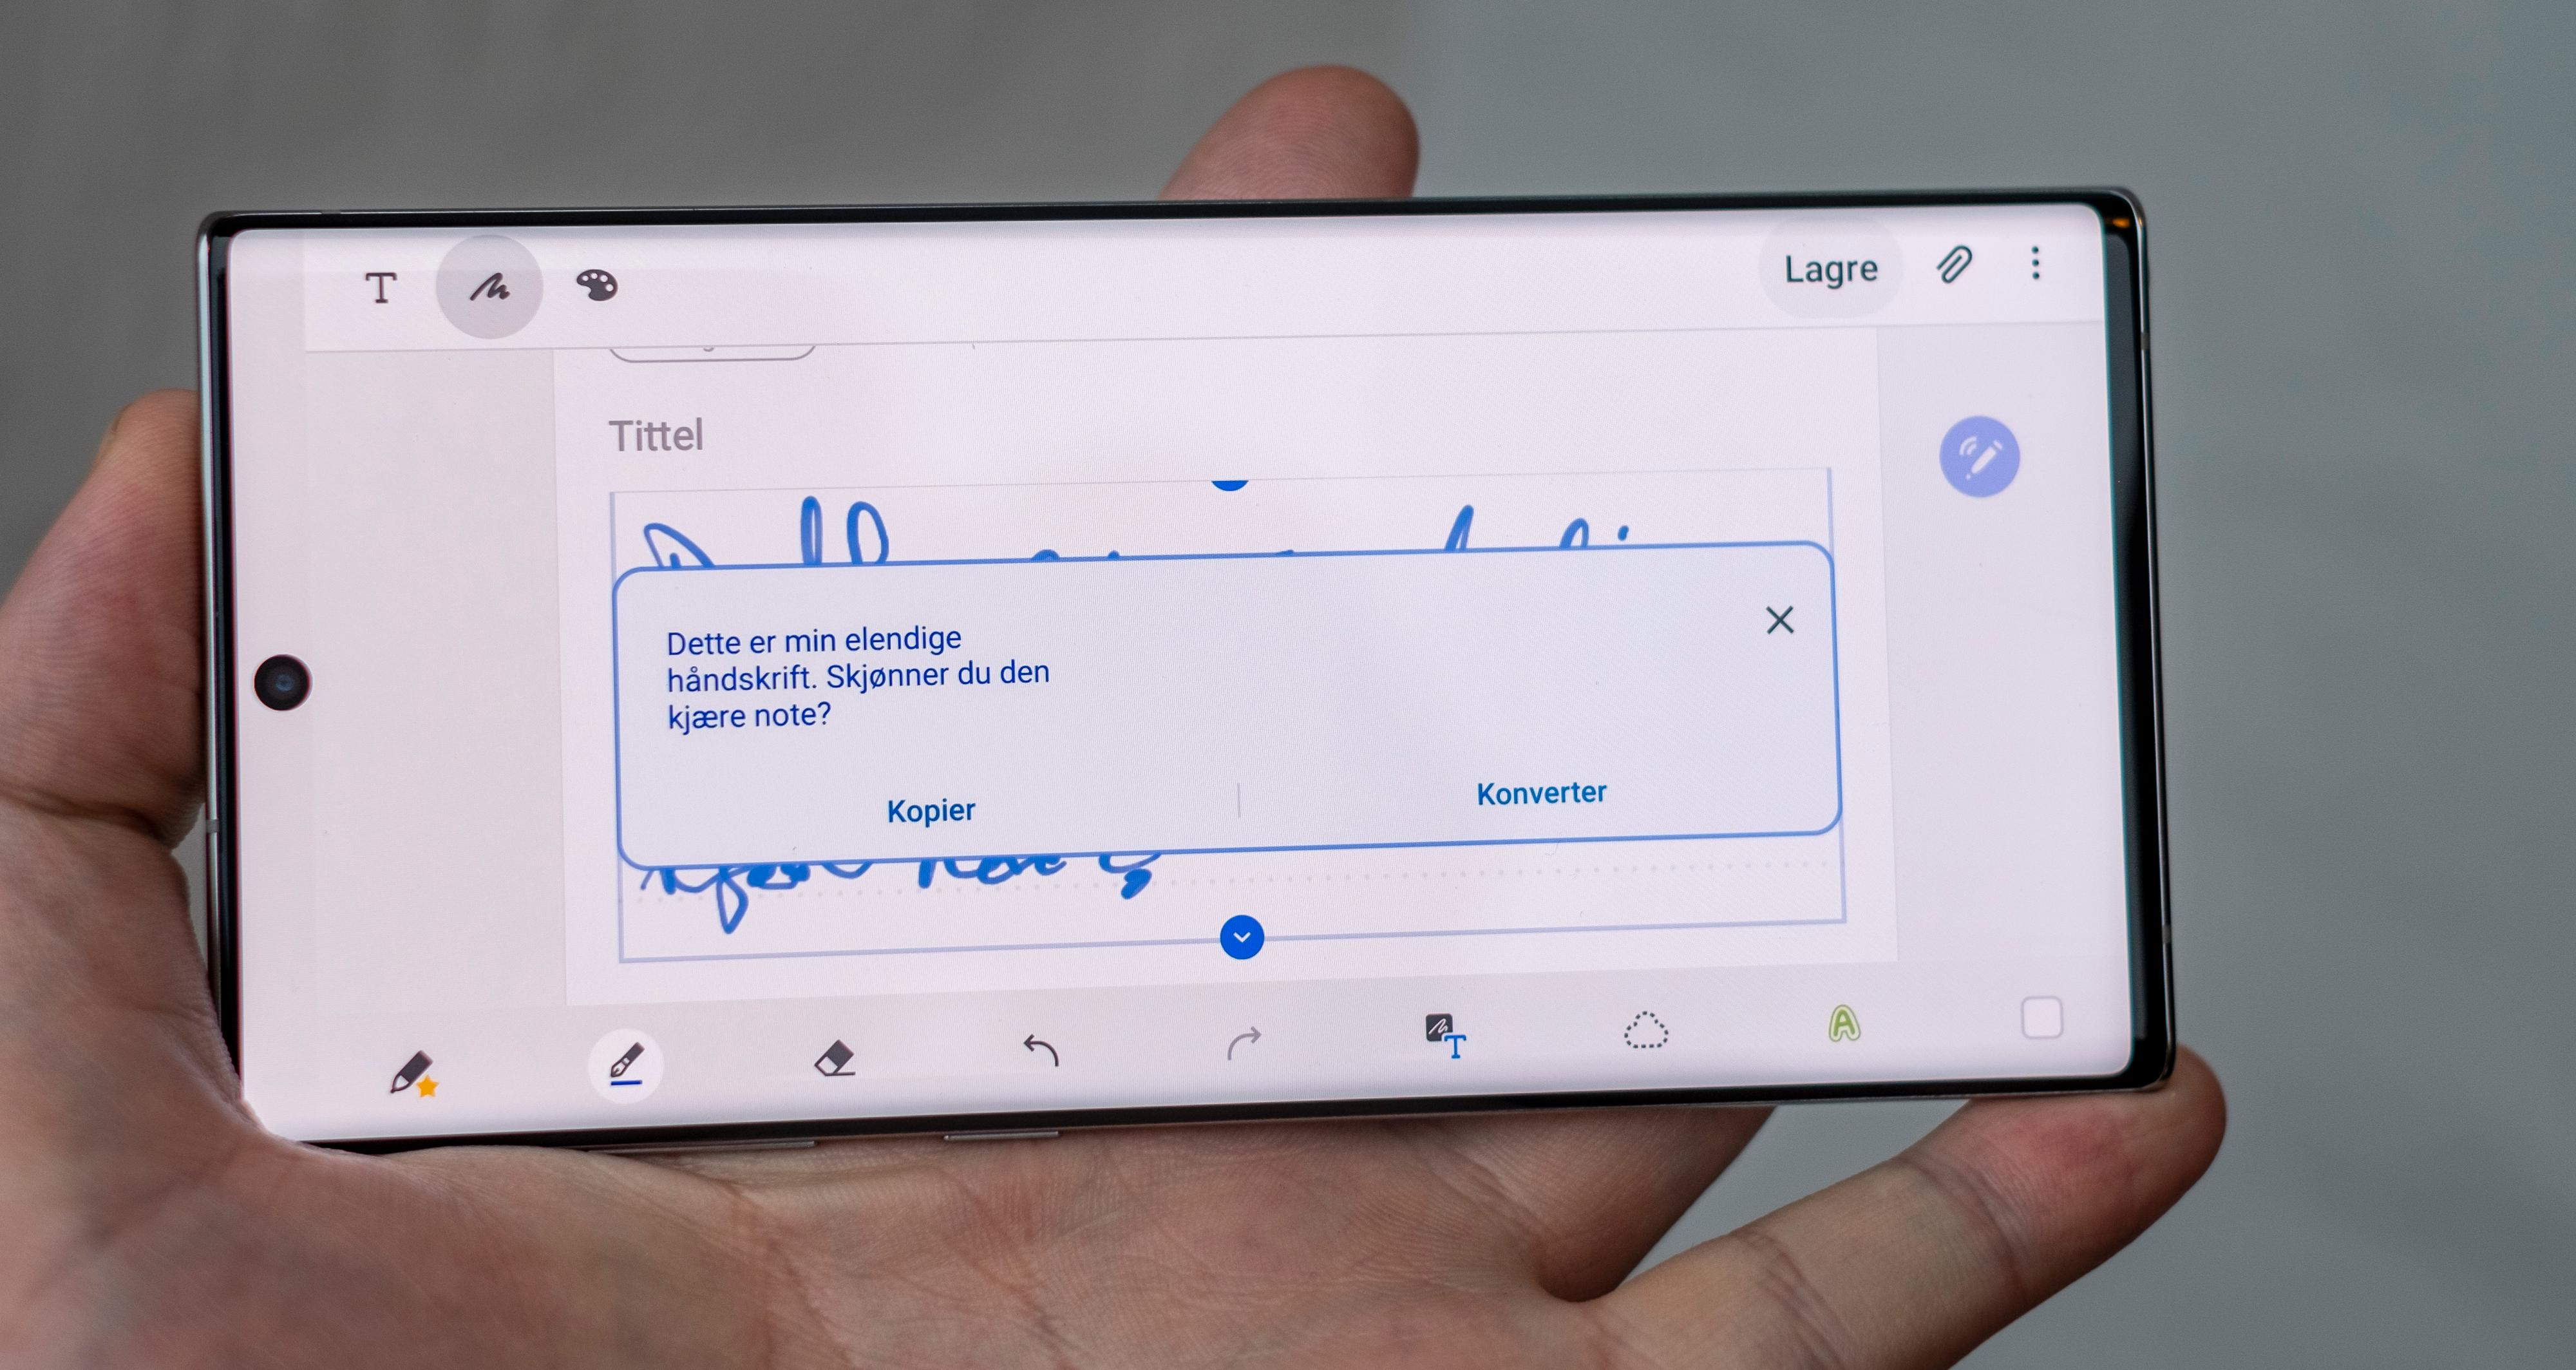 Slik ser det ut når Galaxy Note 10 oversetter fra håndskrift til tekst som kan puttes inn i alt fra e-poster til Word-dokumenter. Det er rett og slett magisk hvor mye den faktisk forstår av krokete kruseduller. Pennen er et langt mer aktuelt hjelpemiddel for folk med dårlig håndskrift i dag enn for få år siden.